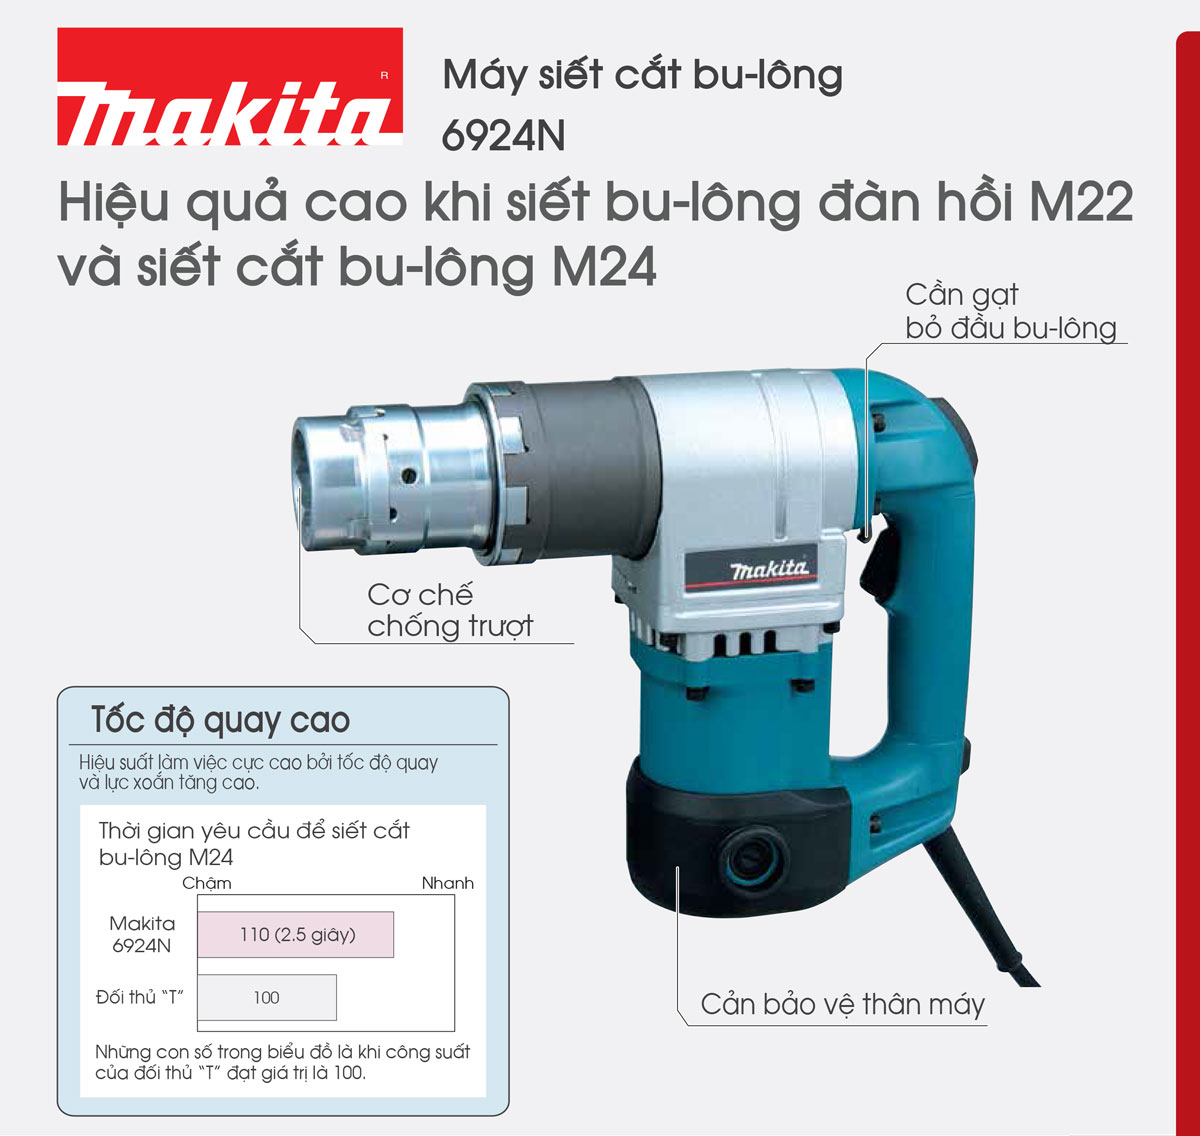 Thiết kế tiện lợi của dòng máy siết cắt bulong Makita 6924N